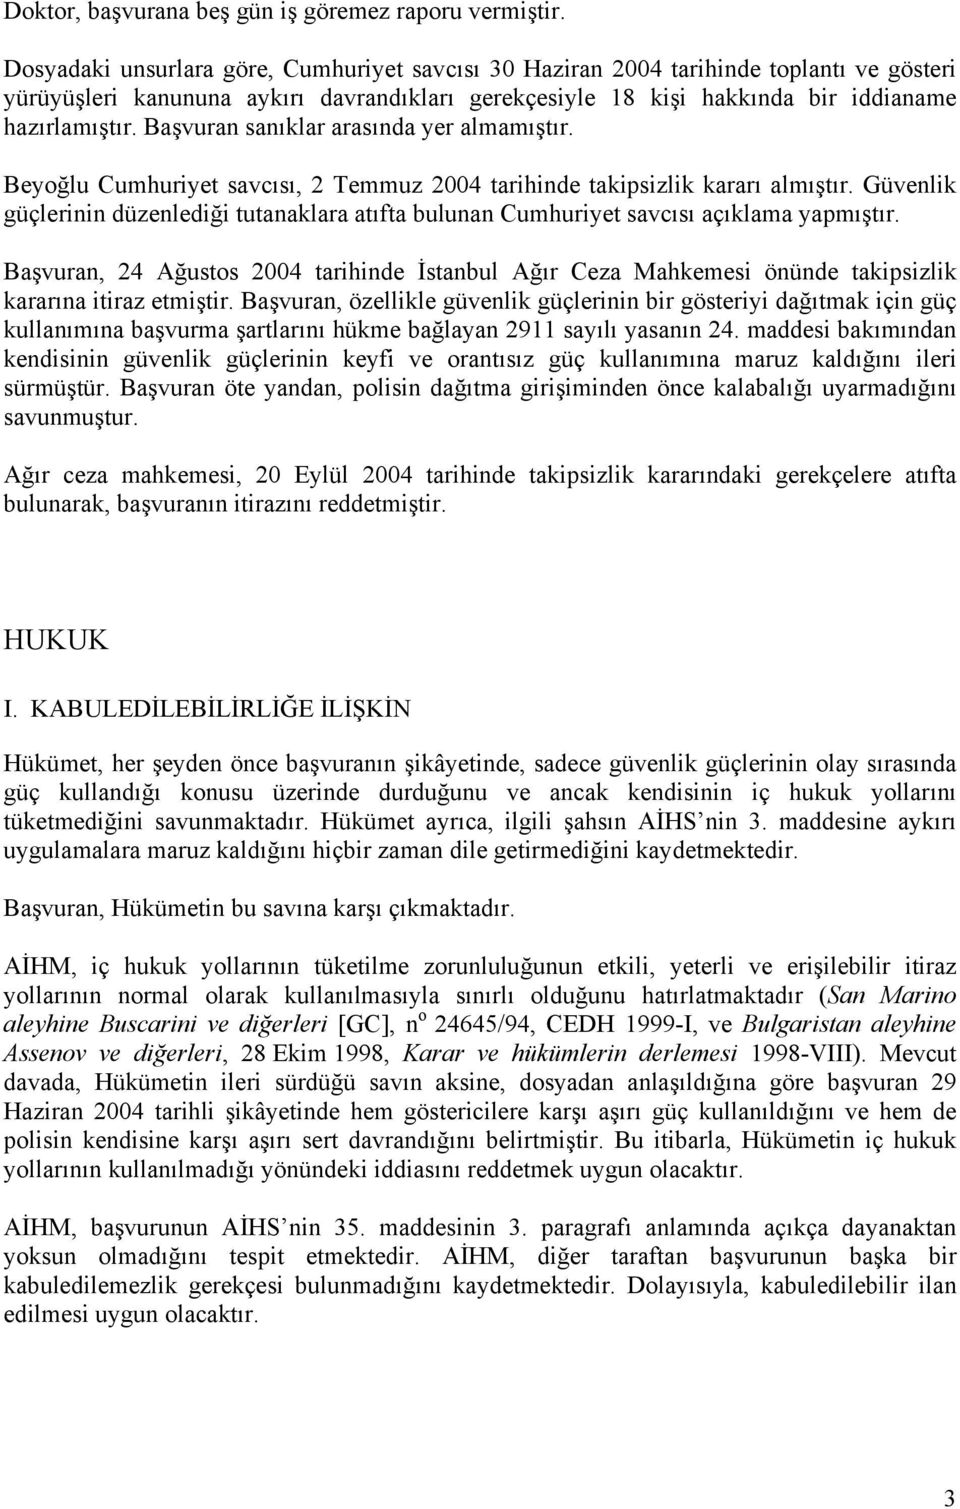 Başvuran sanıklar arasında yer almamıştır. Beyoğlu Cumhuriyet savcısı, 2 Temmuz 2004 tarihinde takipsizlik kararı almıştır.